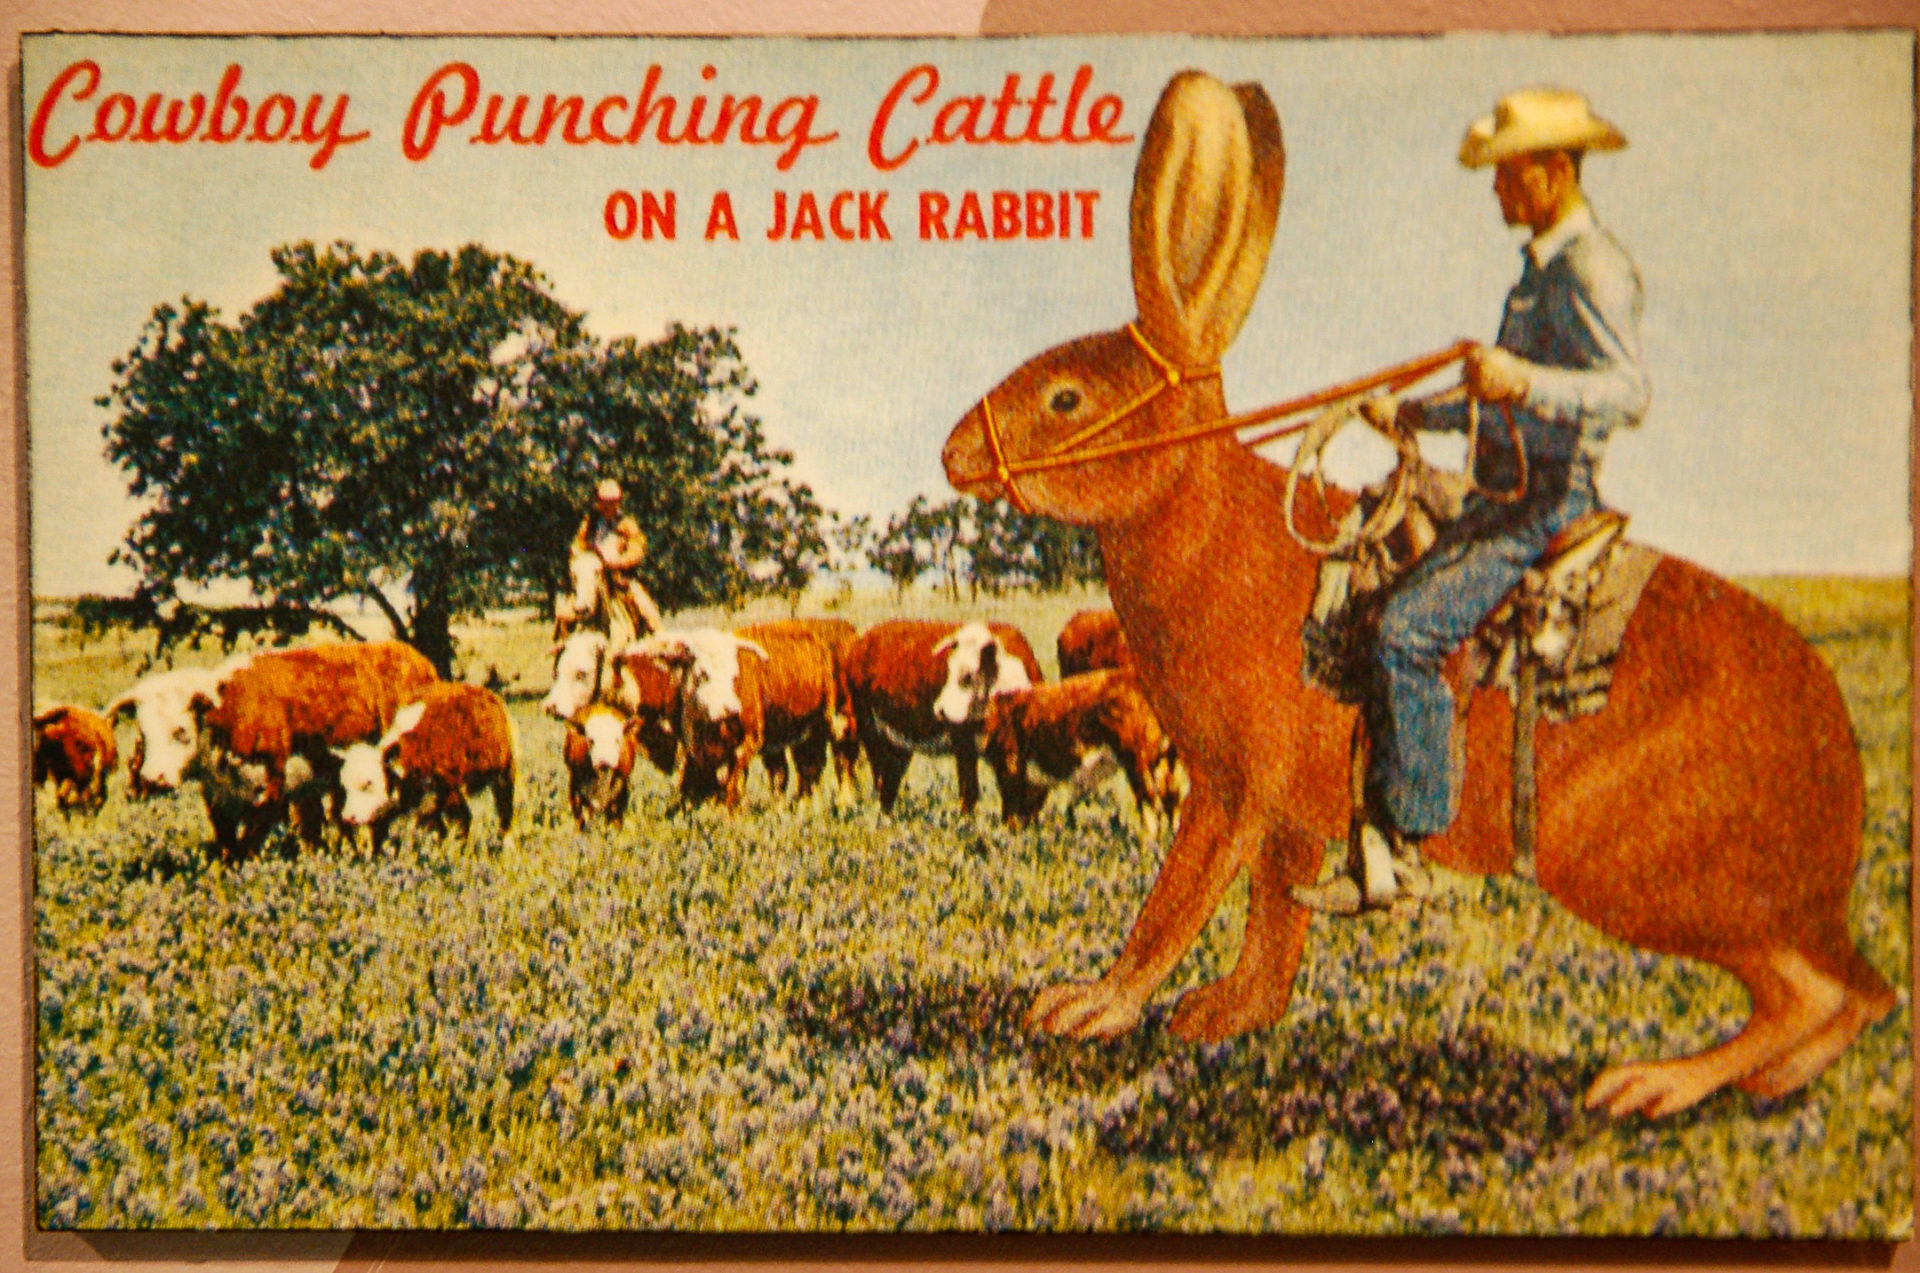 Postkarte von einem Cowboy, der auf einem Jackrabbit reitet